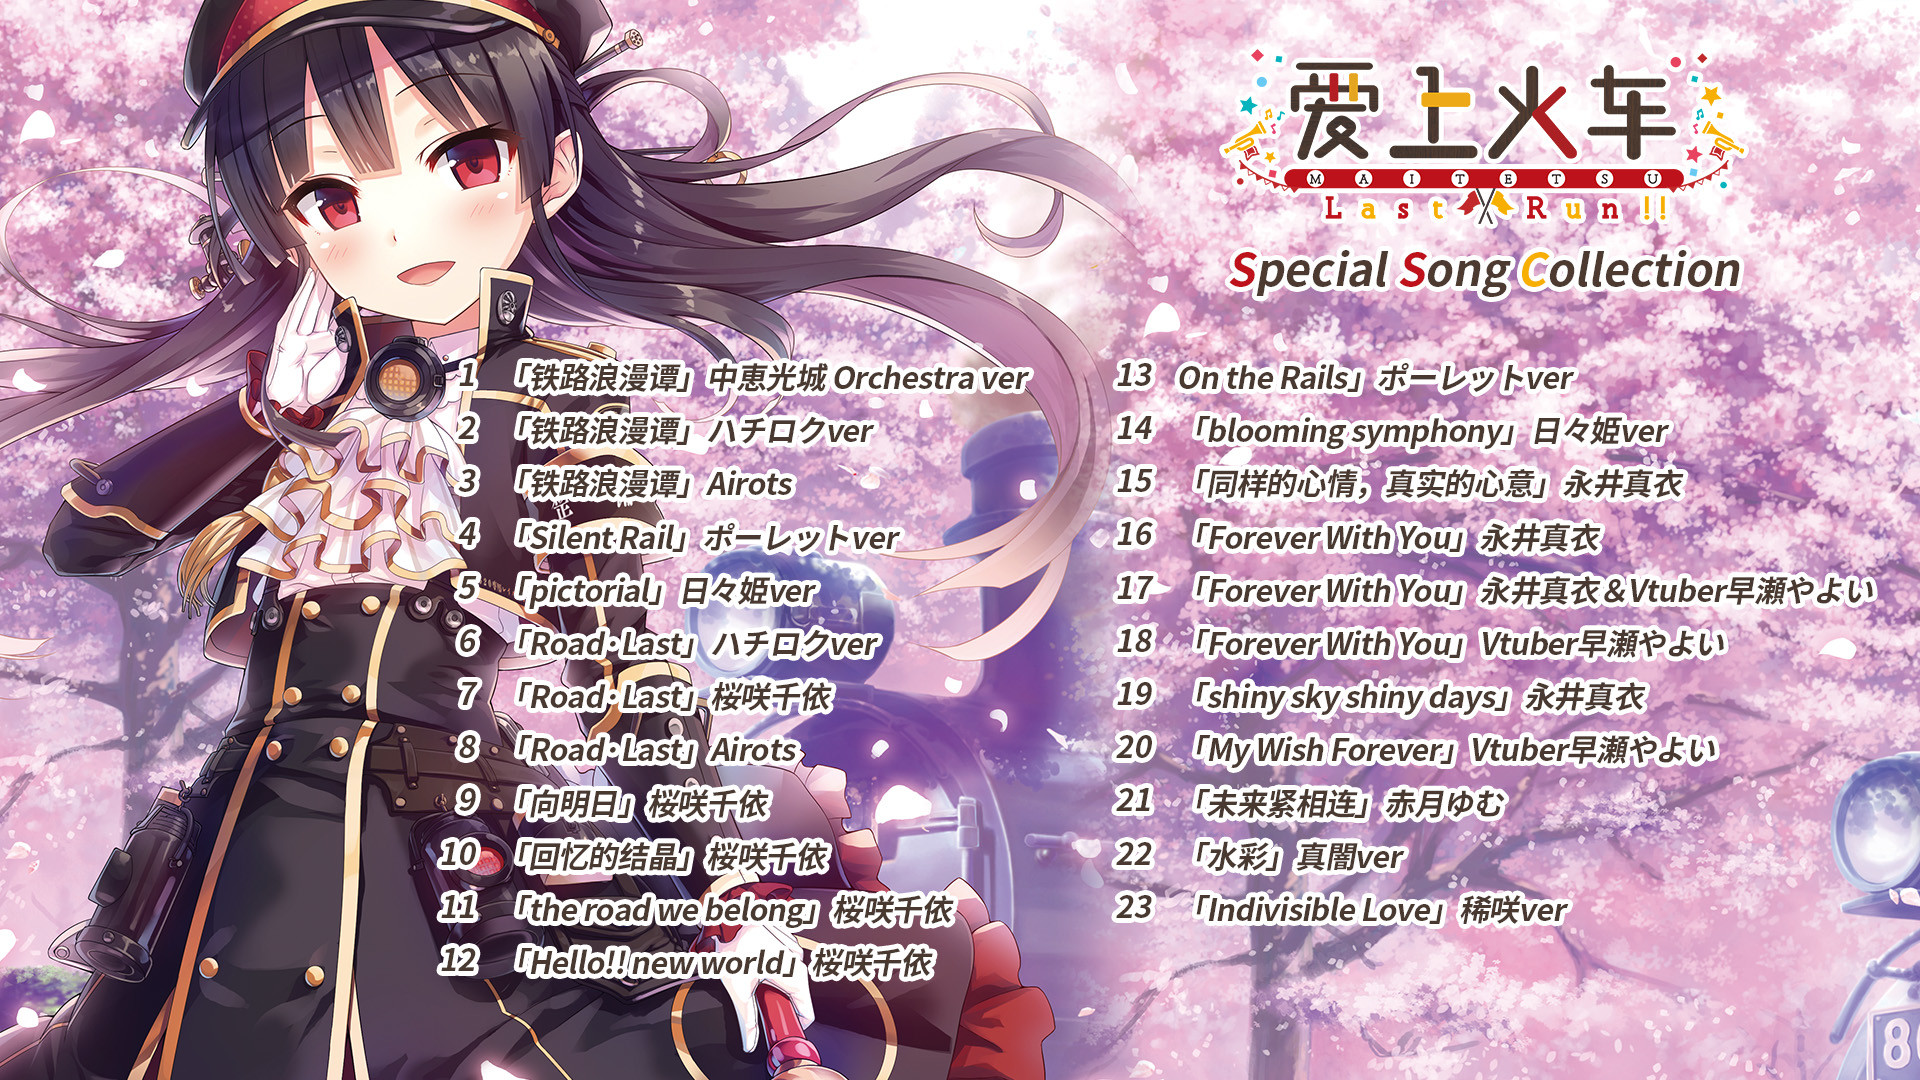 爱上火车-Last Run!!- Special Song Collection Featured Screenshot #1